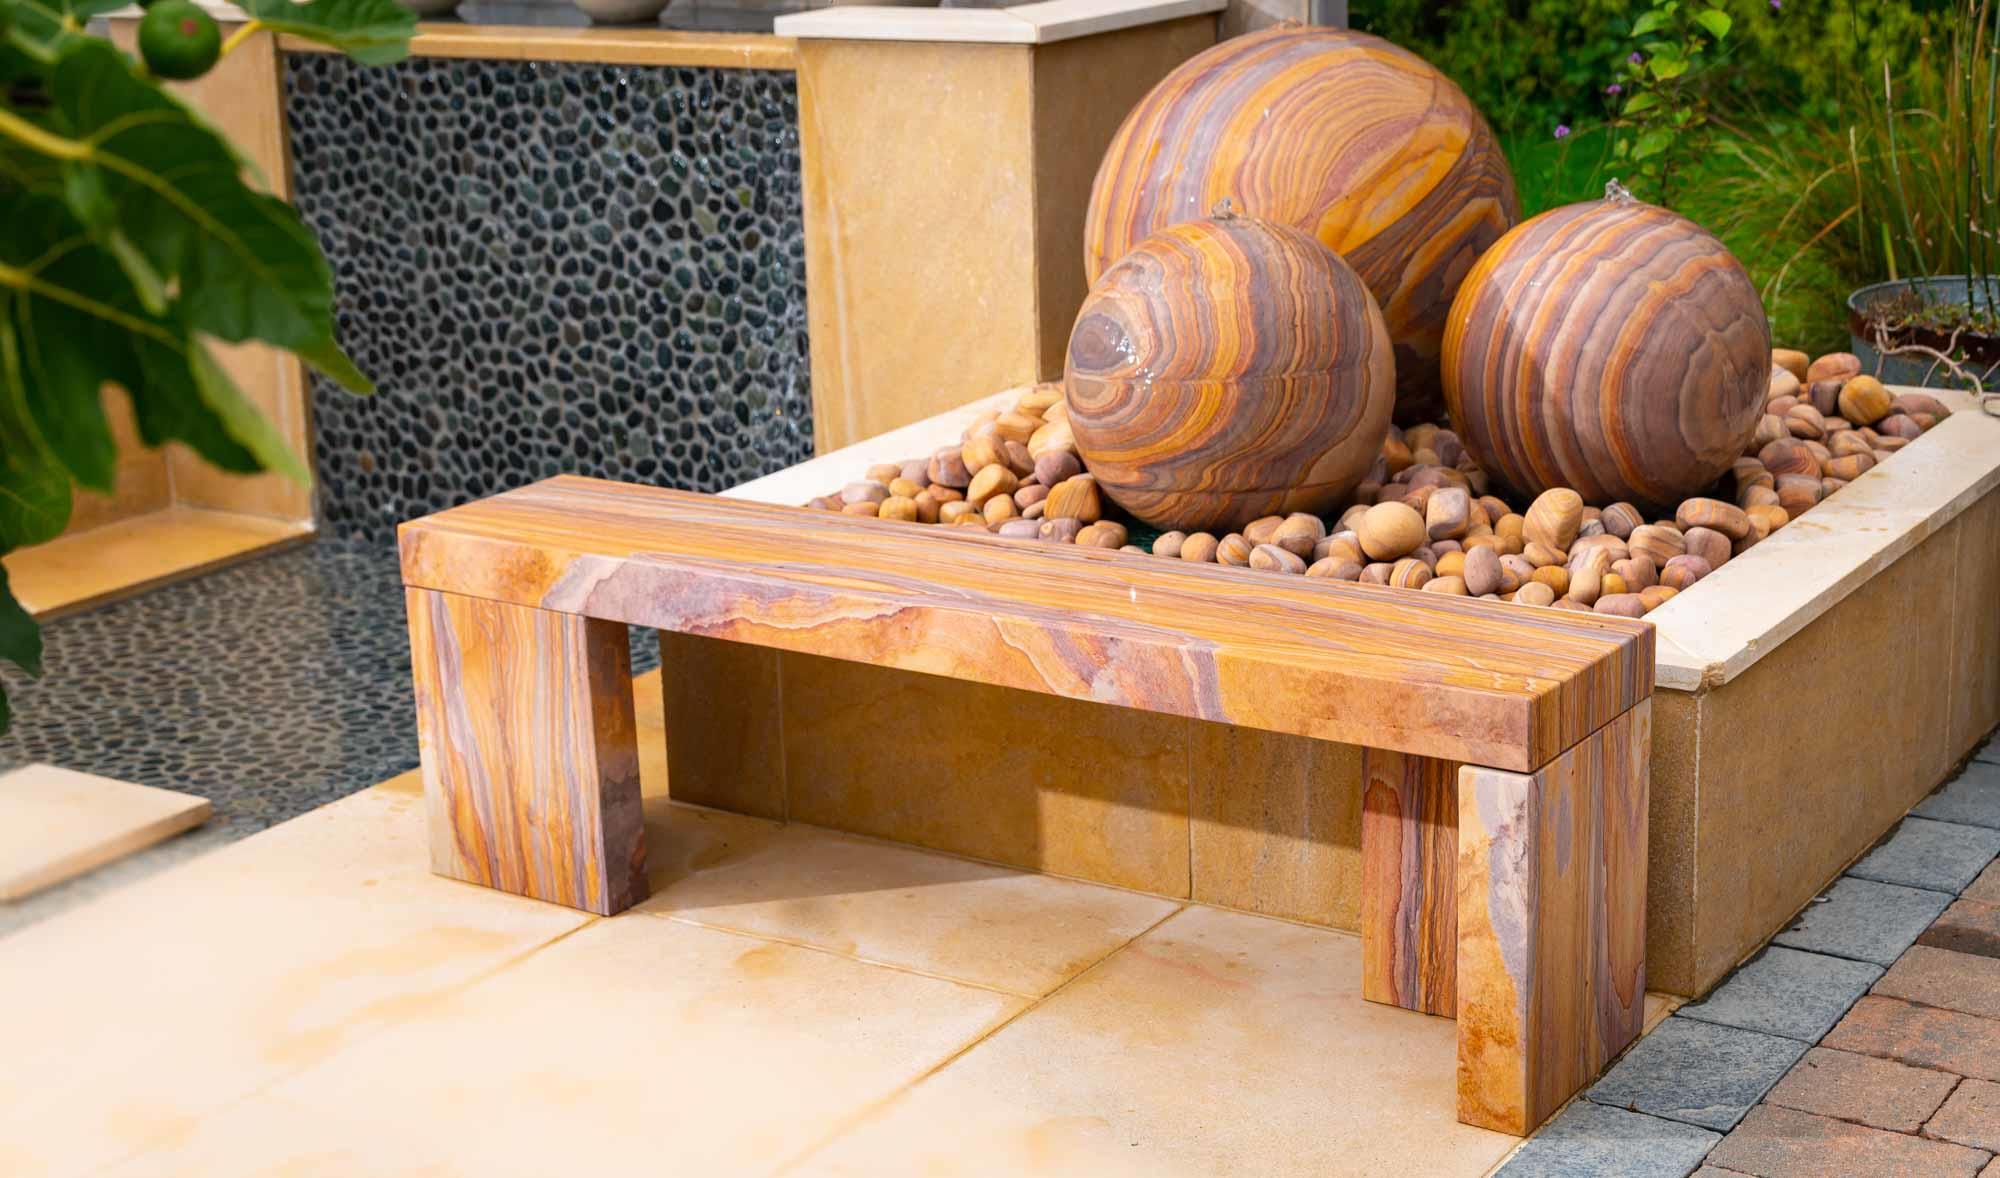 rainbow stone cubist design garden bench in natural sandstone